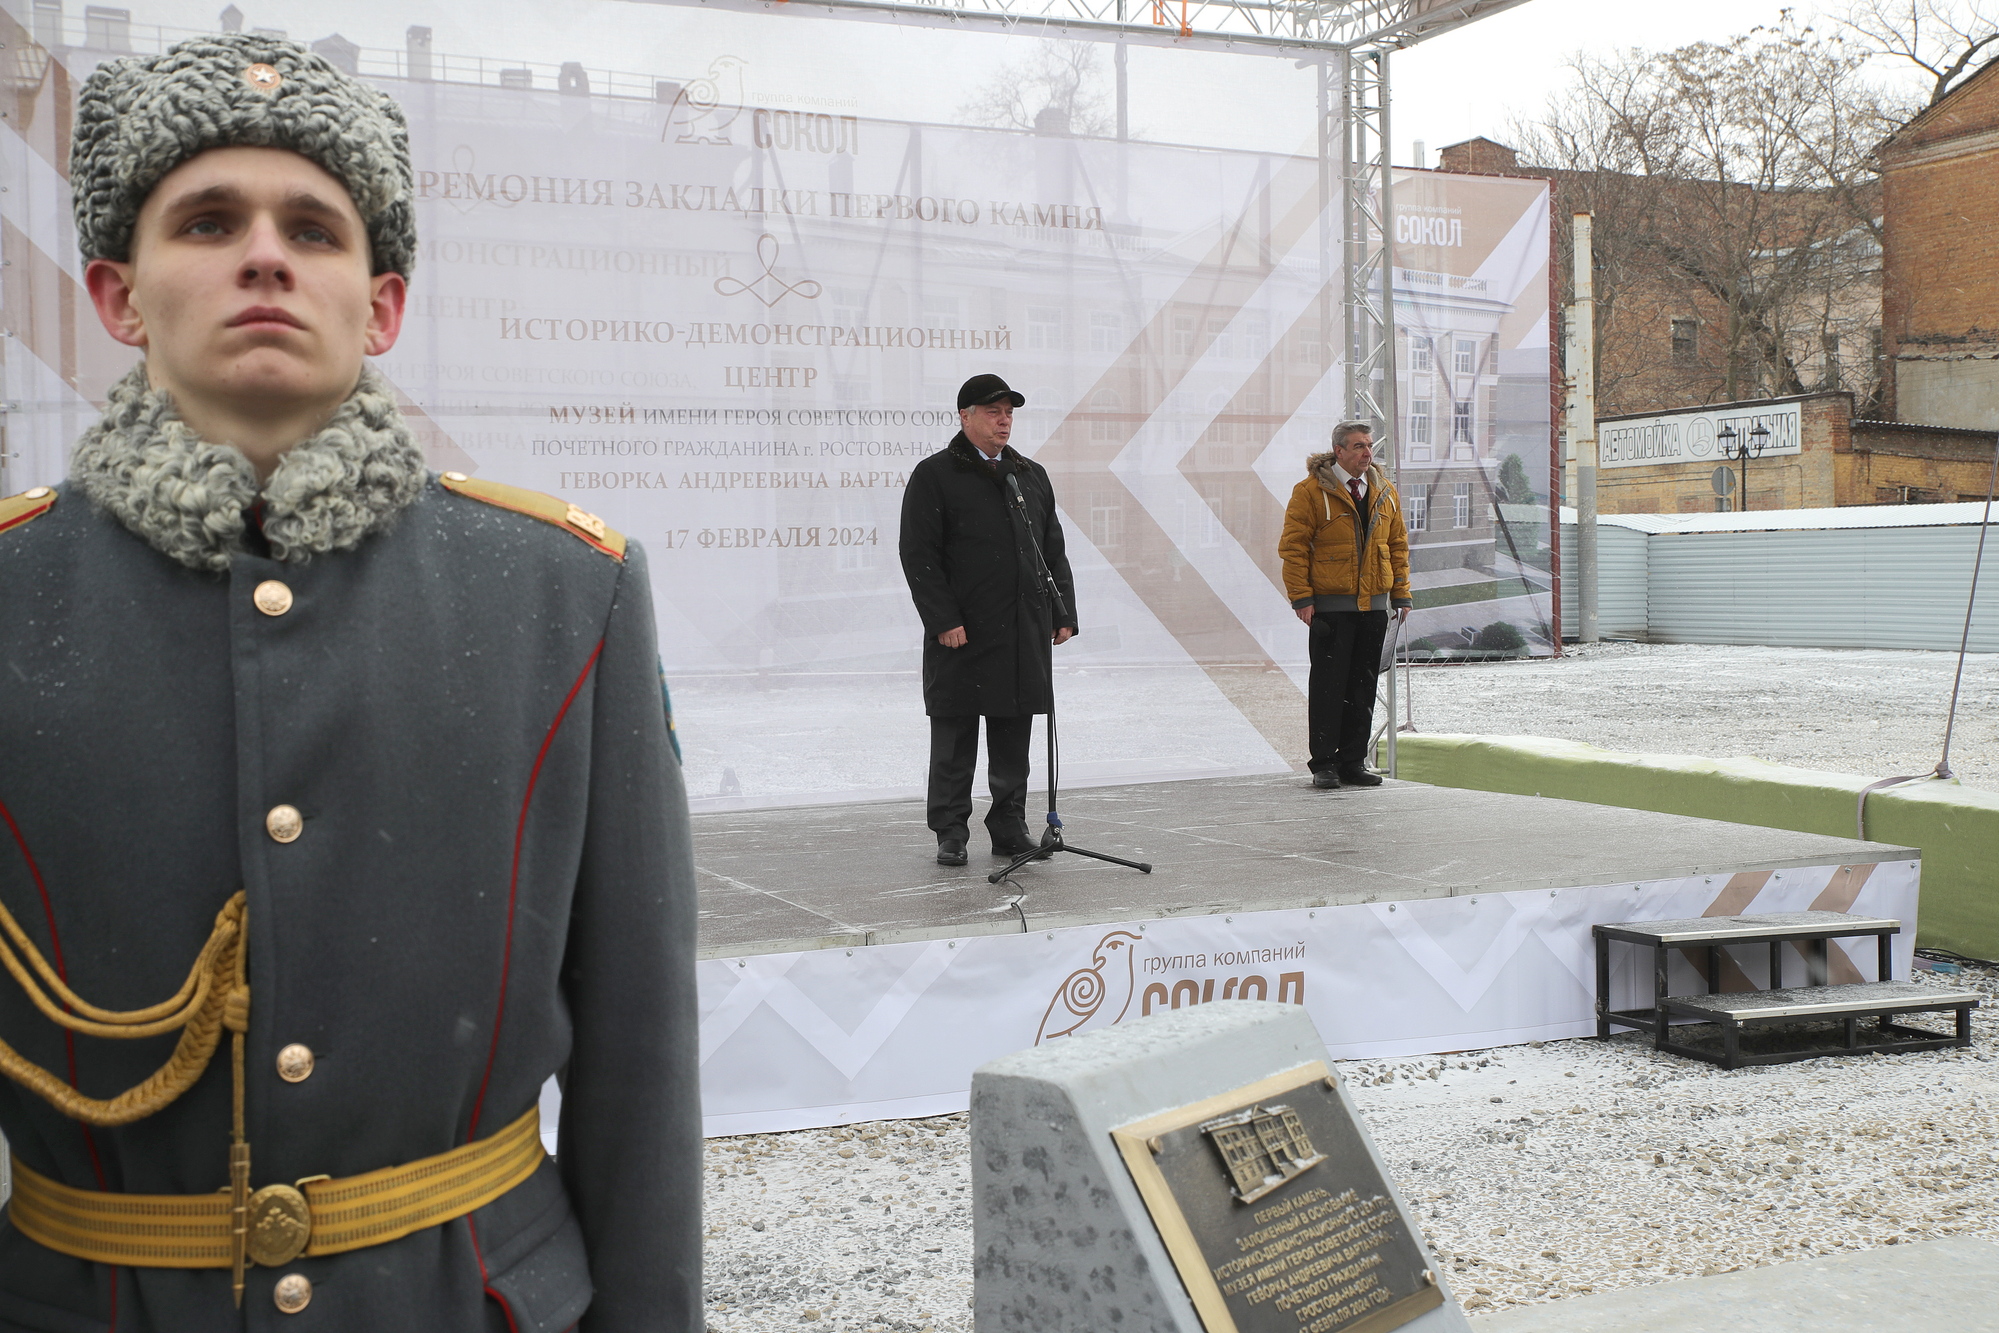 Торжественная церемония закладки первого камня в основание музея Героя Советского Союза Г.А.Вартаняна